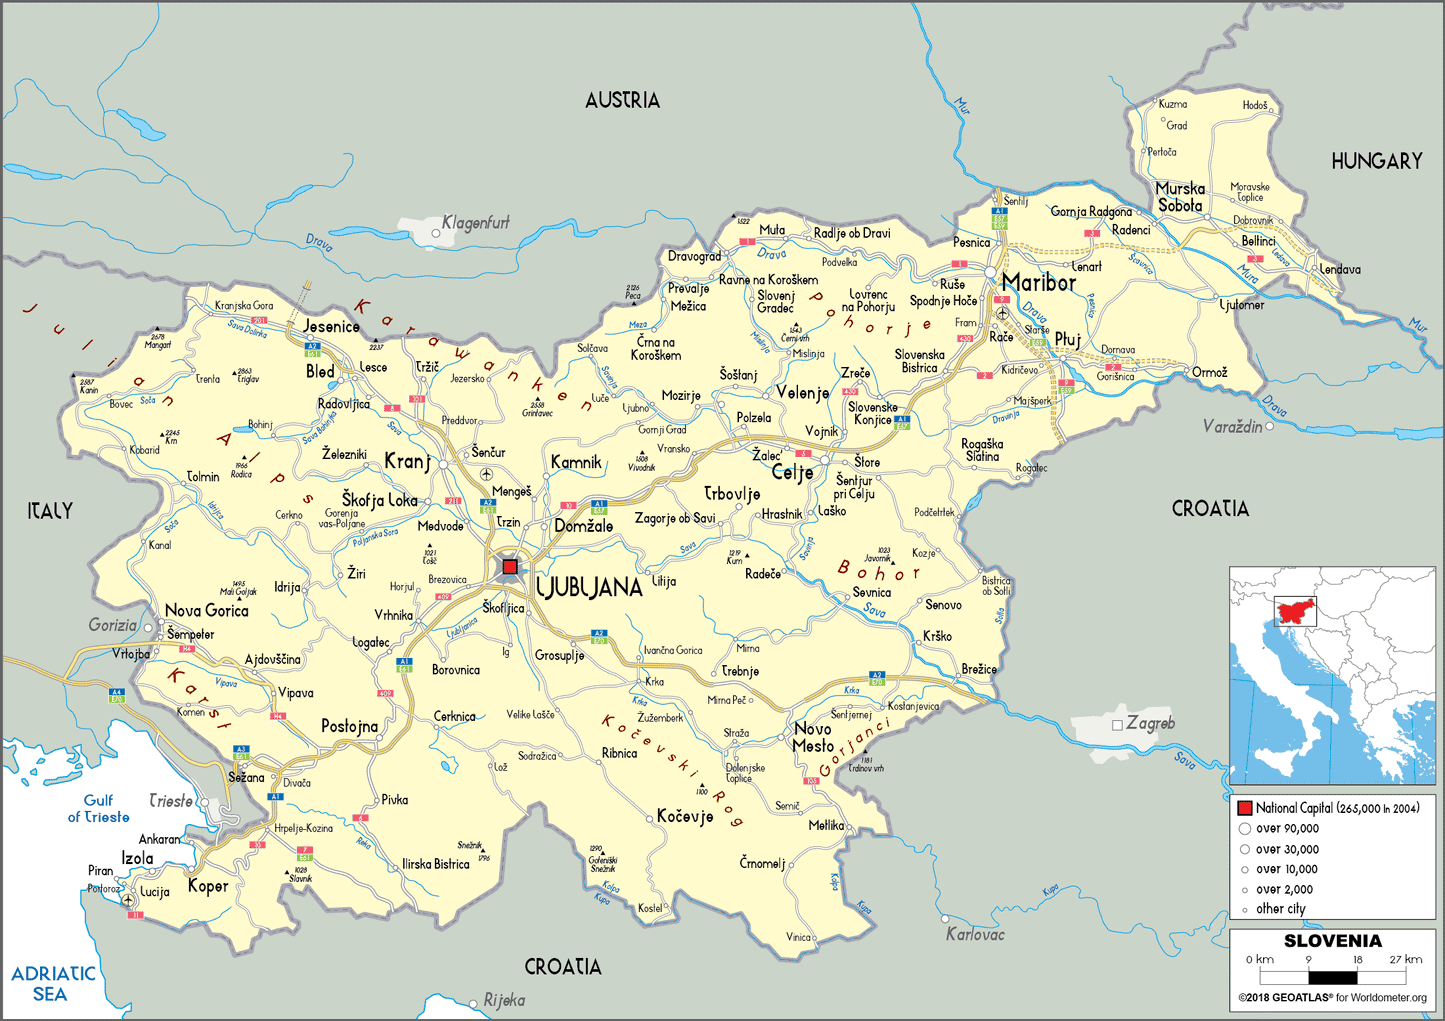 Overzicht regio's in Slovenië